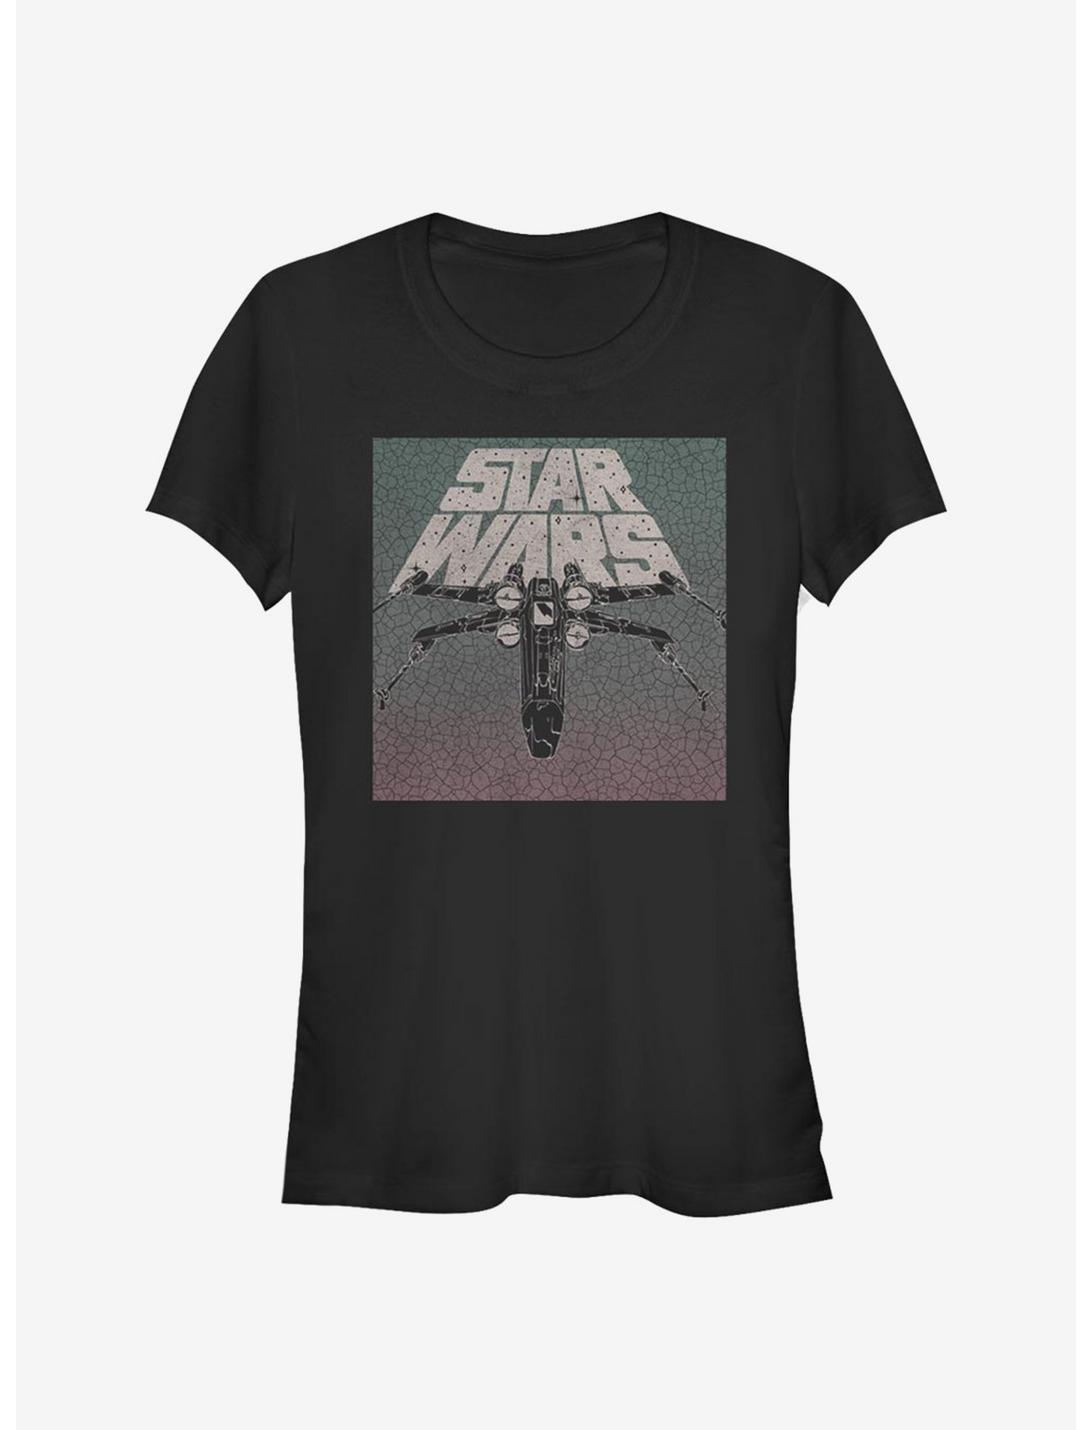 Star Wars Grunge Girls T-Shirt, BLACK, hi-res